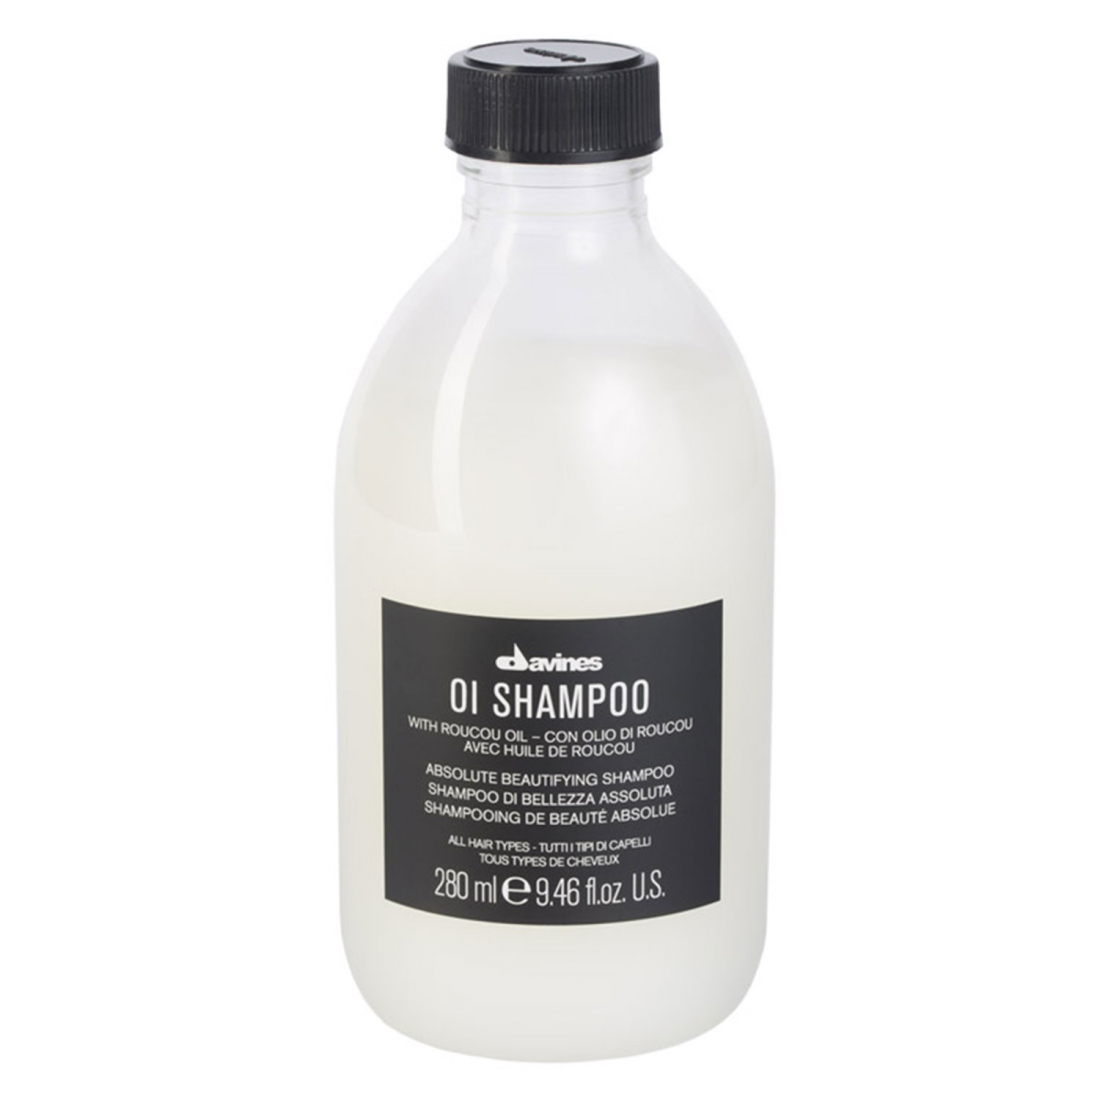 'OI' Shampoo - 280 ml